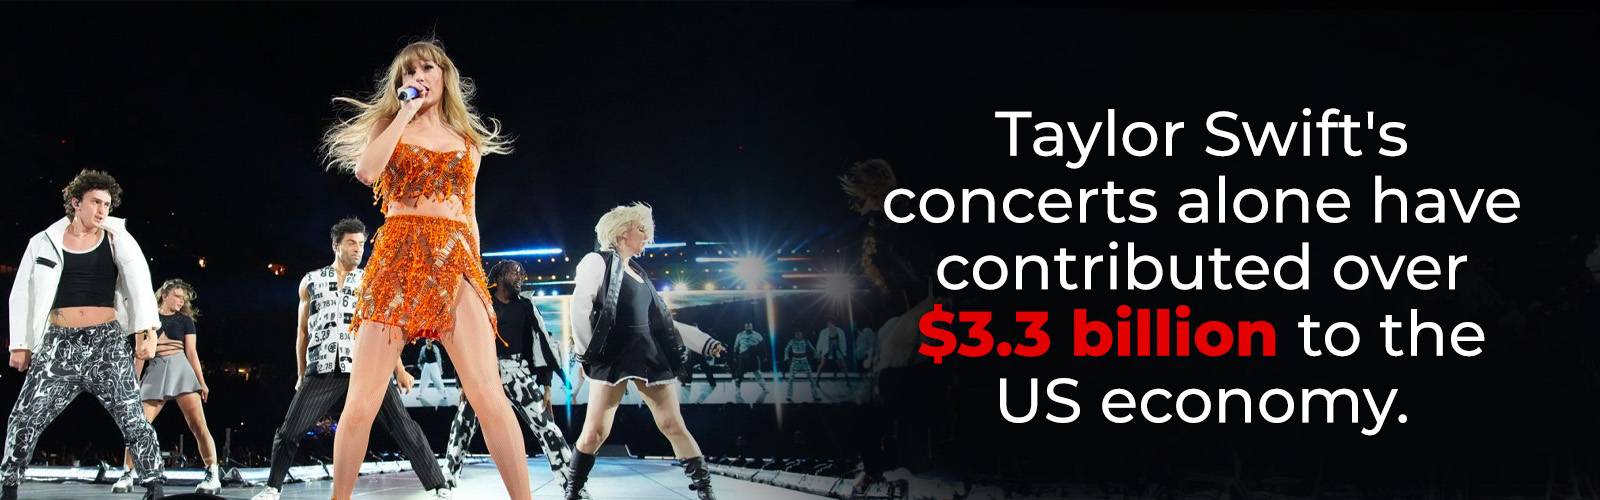 テイラー・スウィフトのコンサートが米国経済に貢献